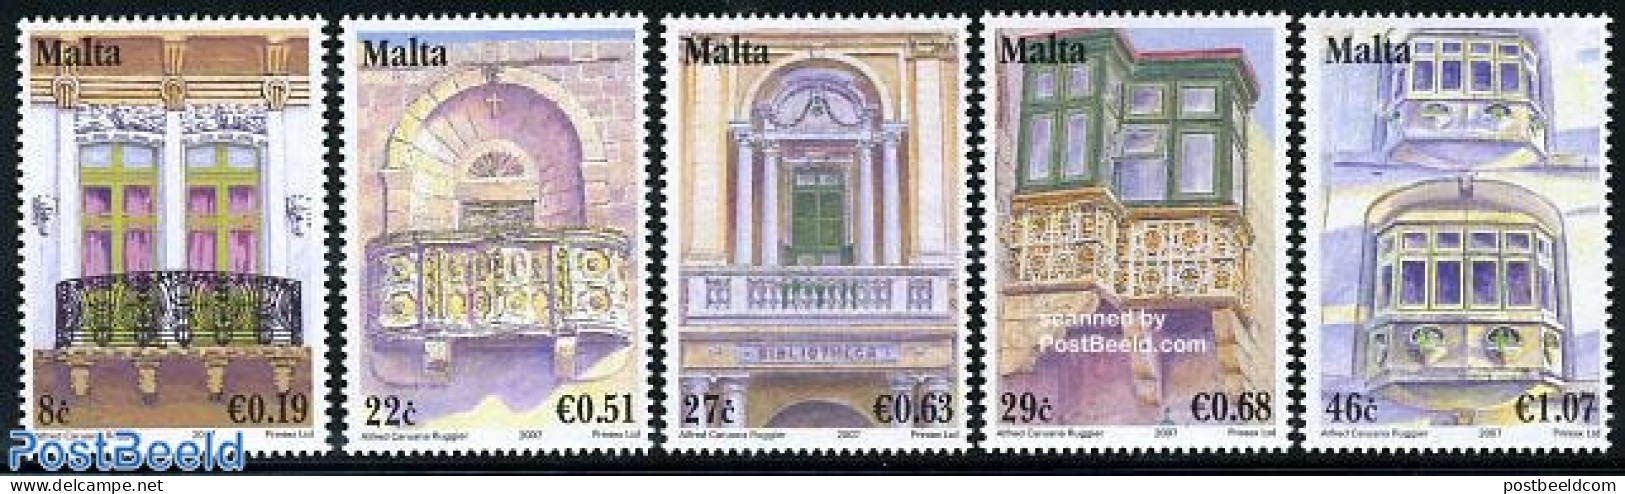 Malta 2007 Balcons 5v, Mint NH, Art - Architecture - Malte